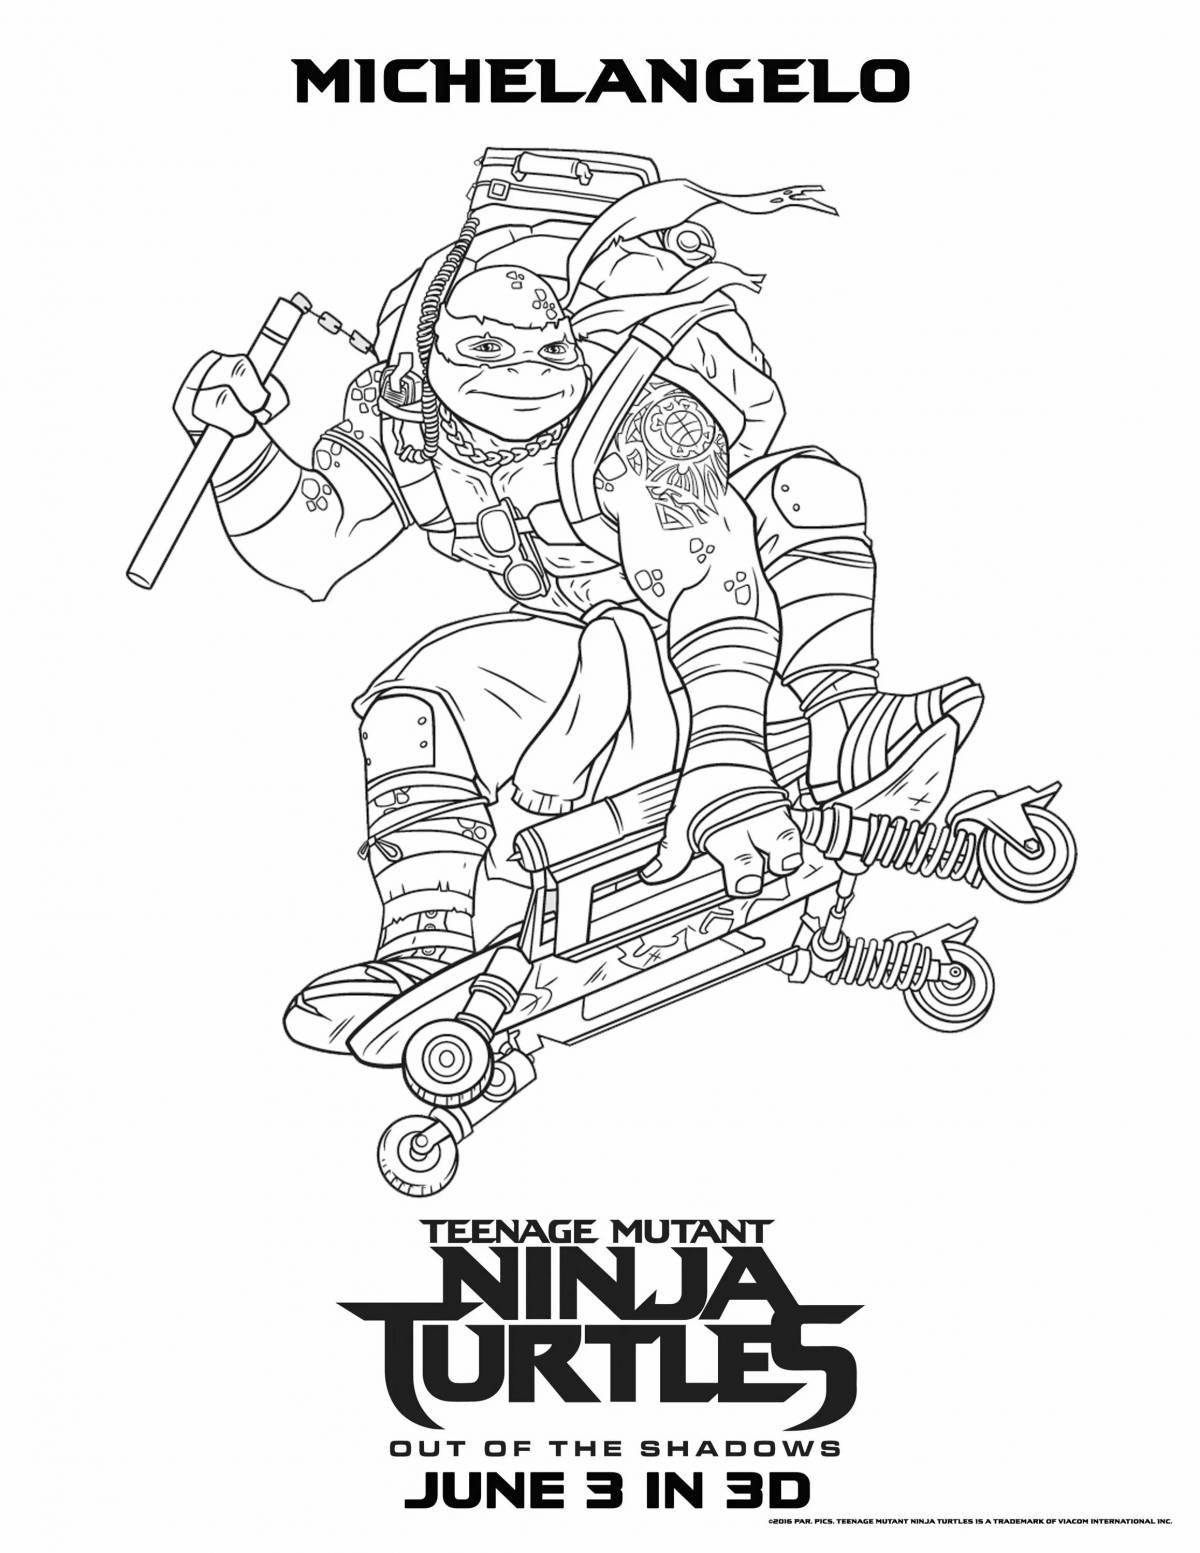 Teenage Mutant Ninja Turtles sharptooth coloring page